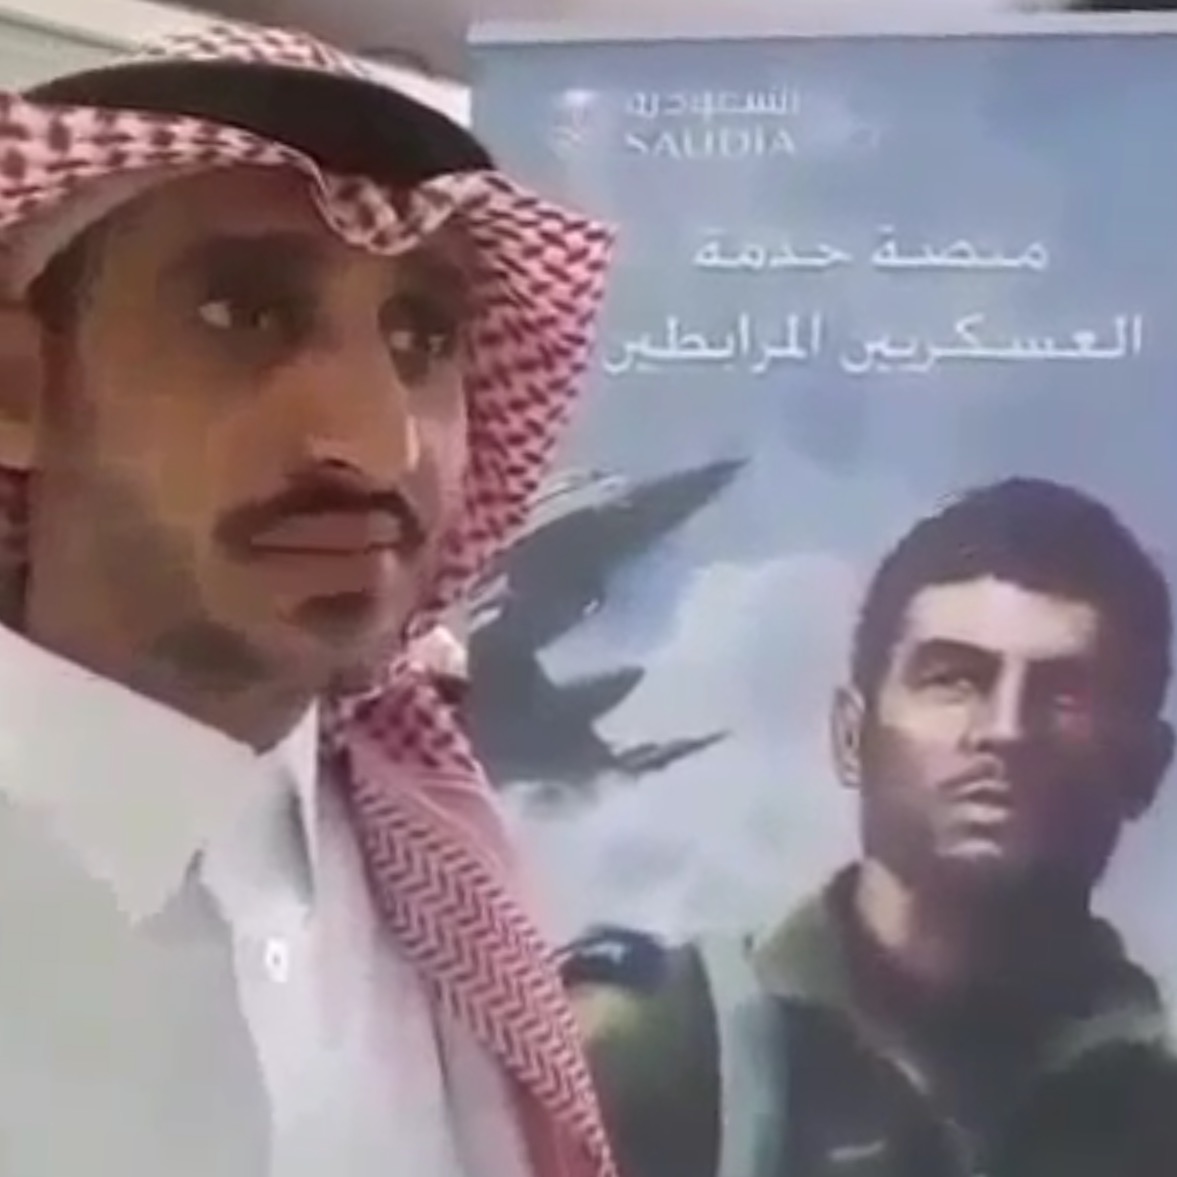 بالفيديو.. الرقيب أول نايف معوض يروي معاناته مع الخطوط السعودية قبل استشهاده بيومين